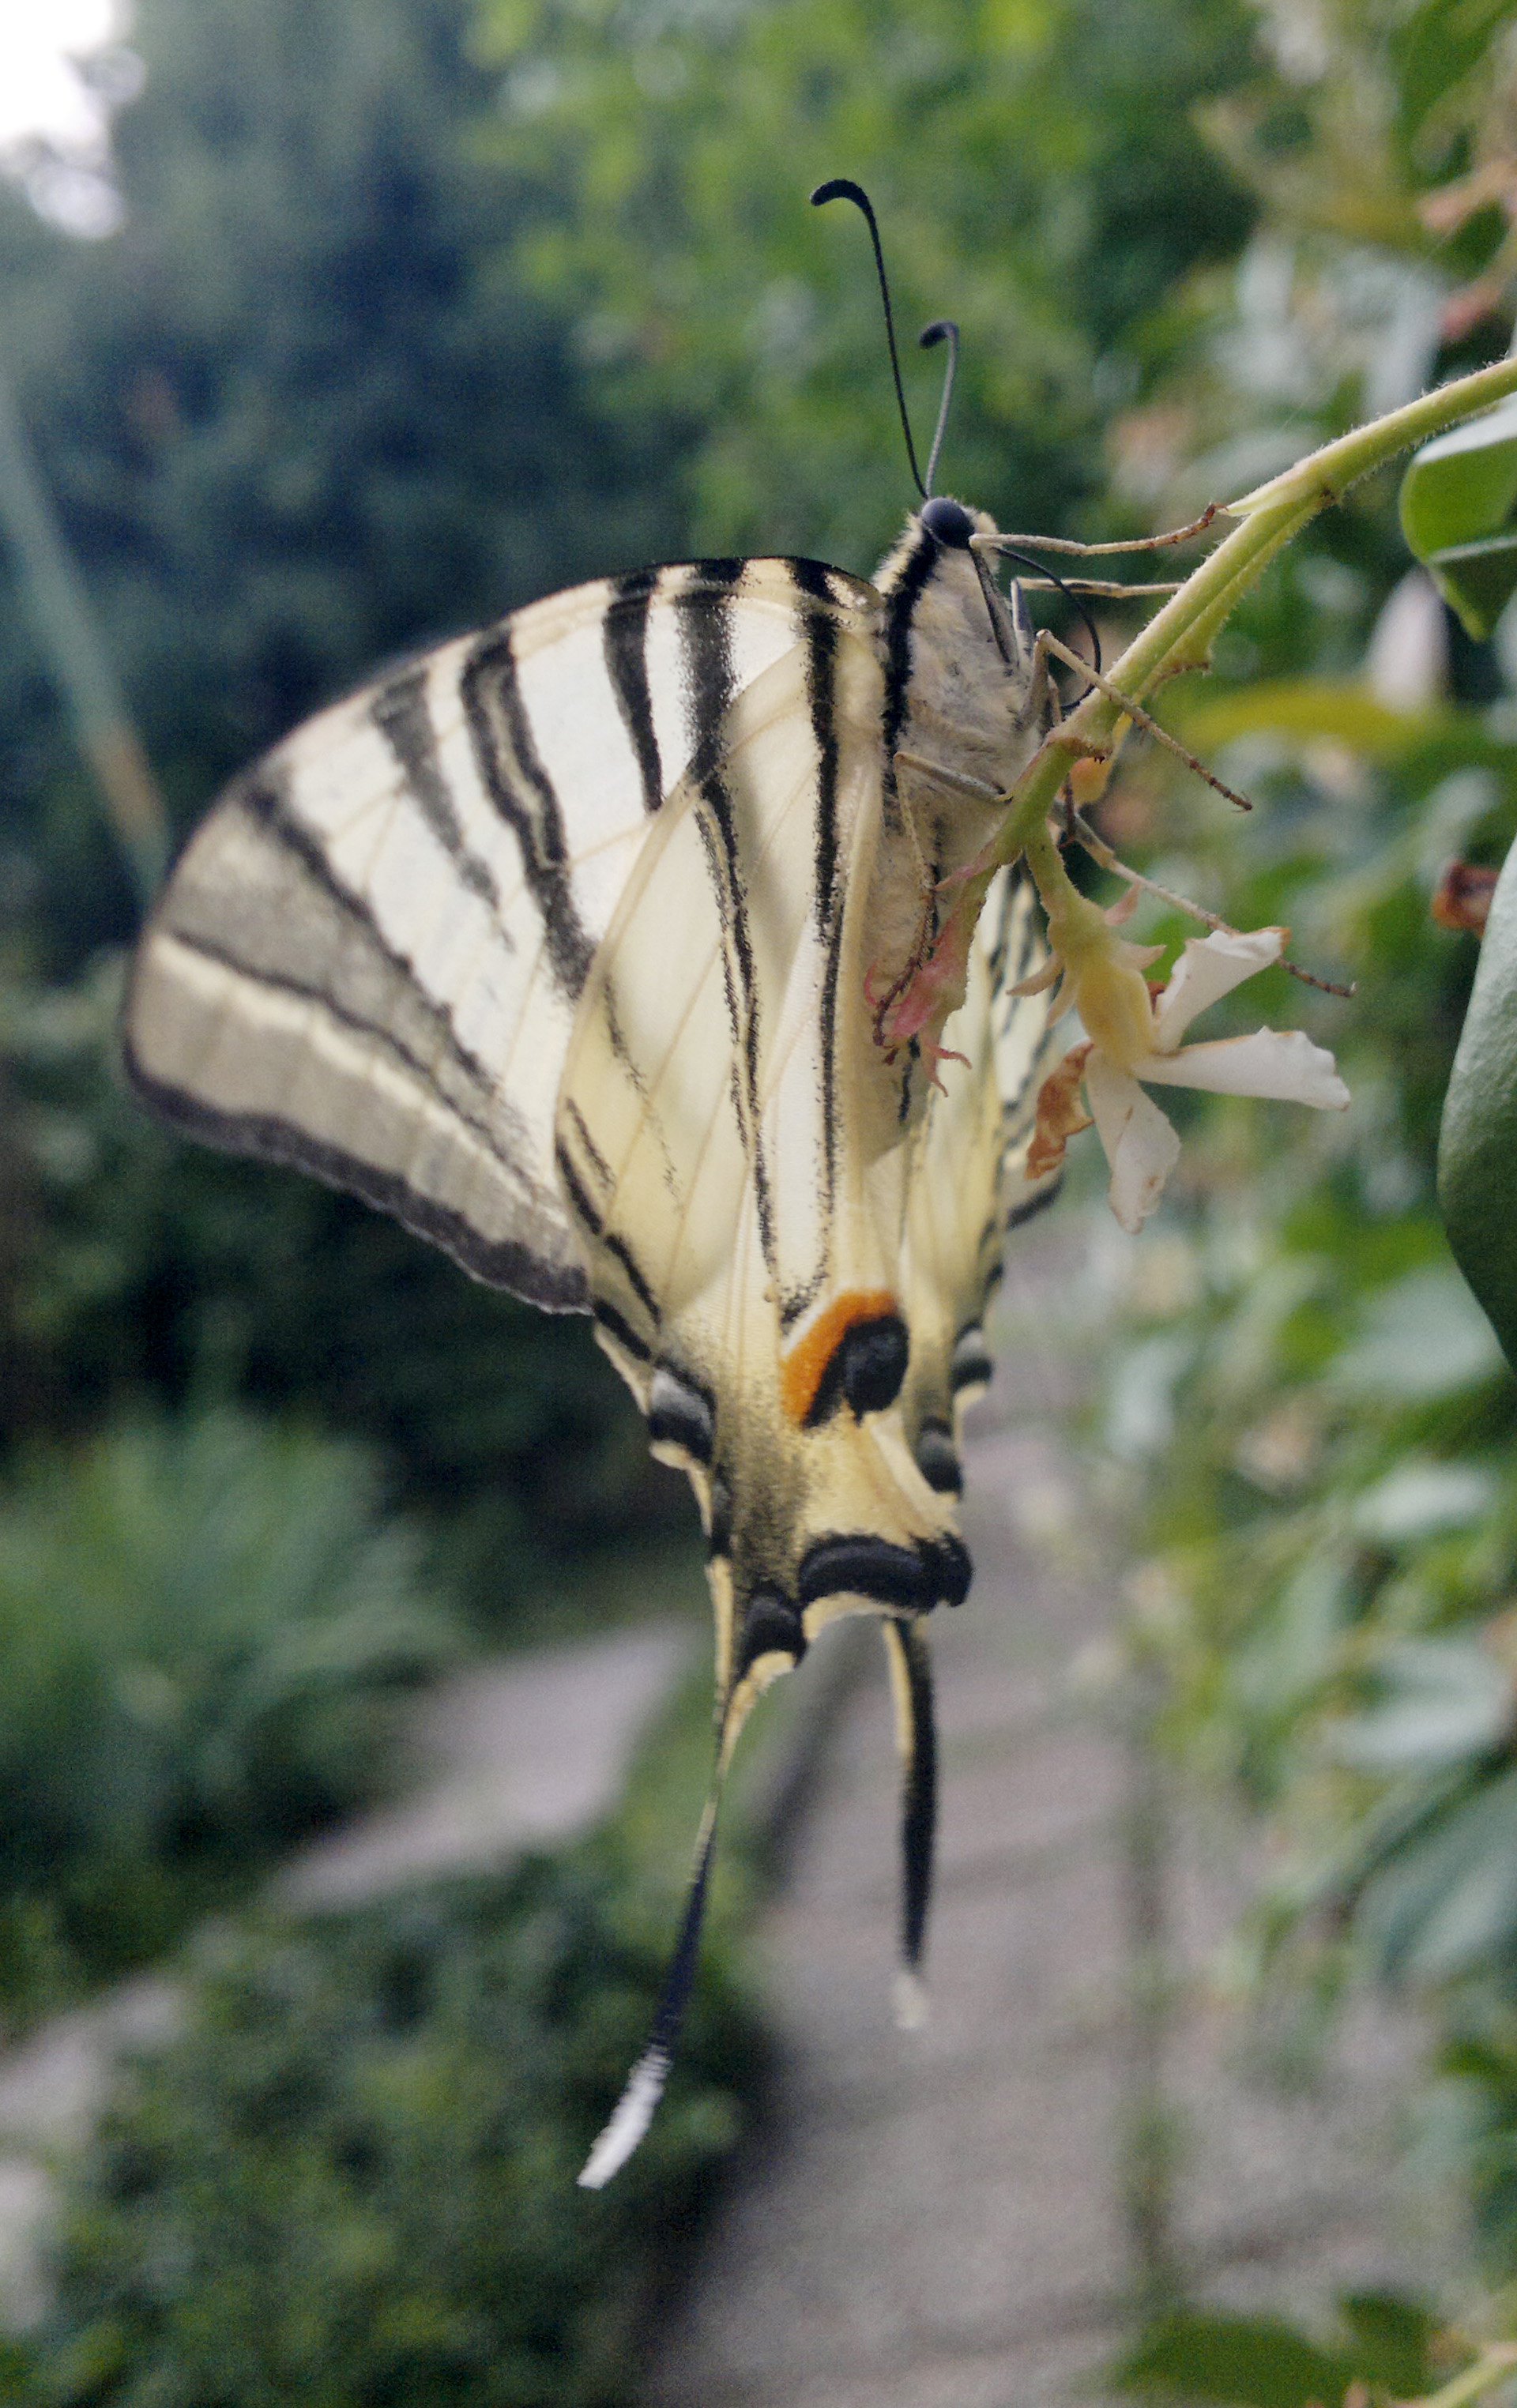 Fam. Papilionidae. Italia, Brescia, 16 Jun 2015. Provided by Paolo Beneventi